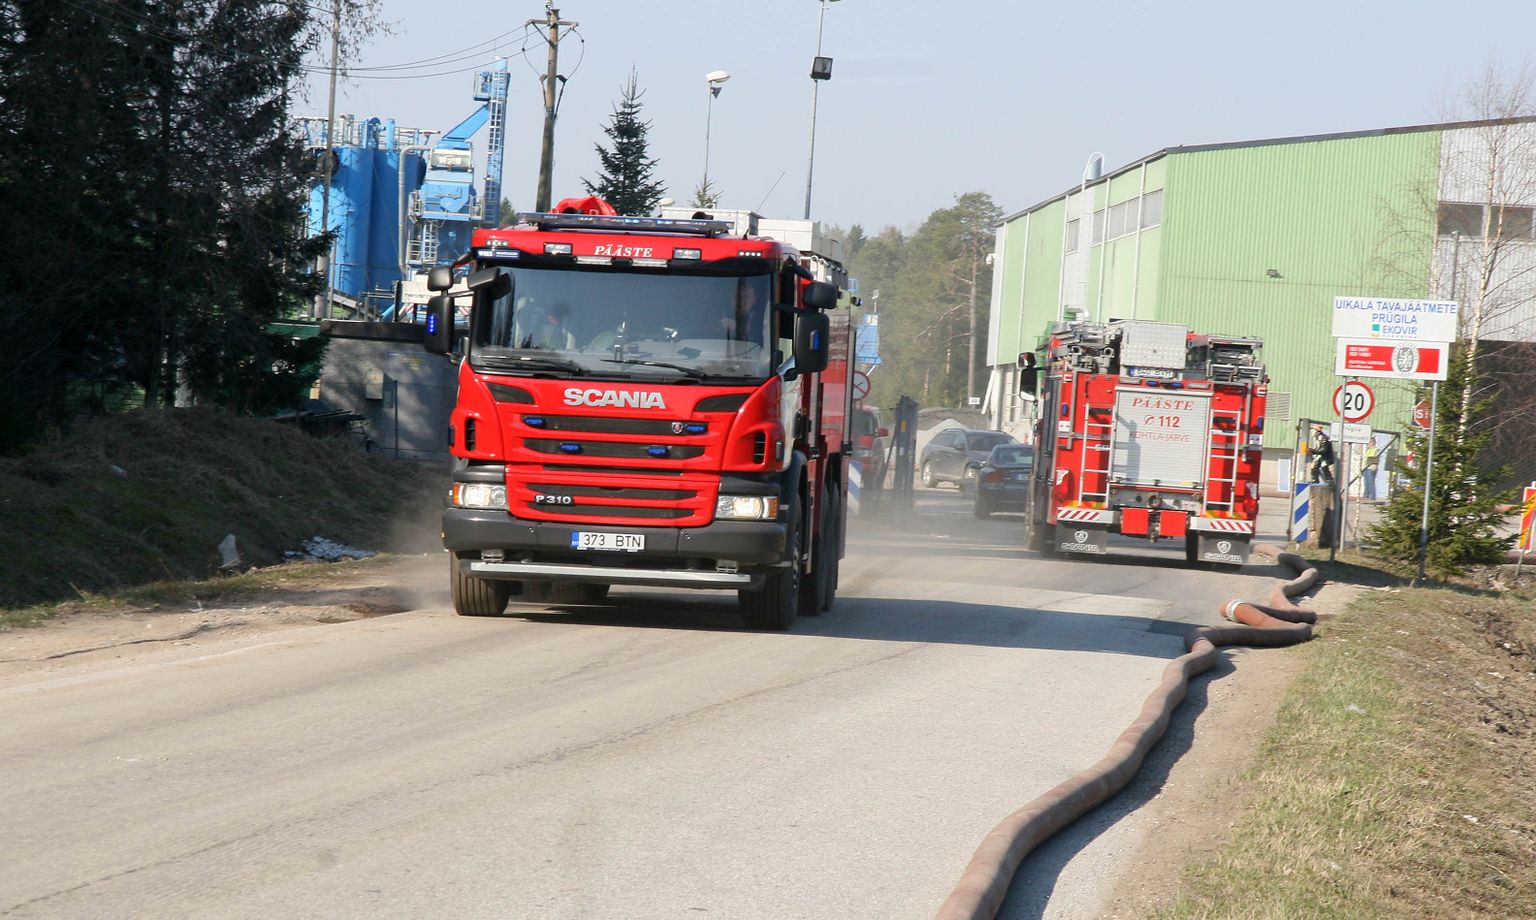 Päästeautod on Uikala prügilas sagedased külalised. Juuresolev pilt on tehtud mullu aprillis, kui seal oli järjekordne põleng.